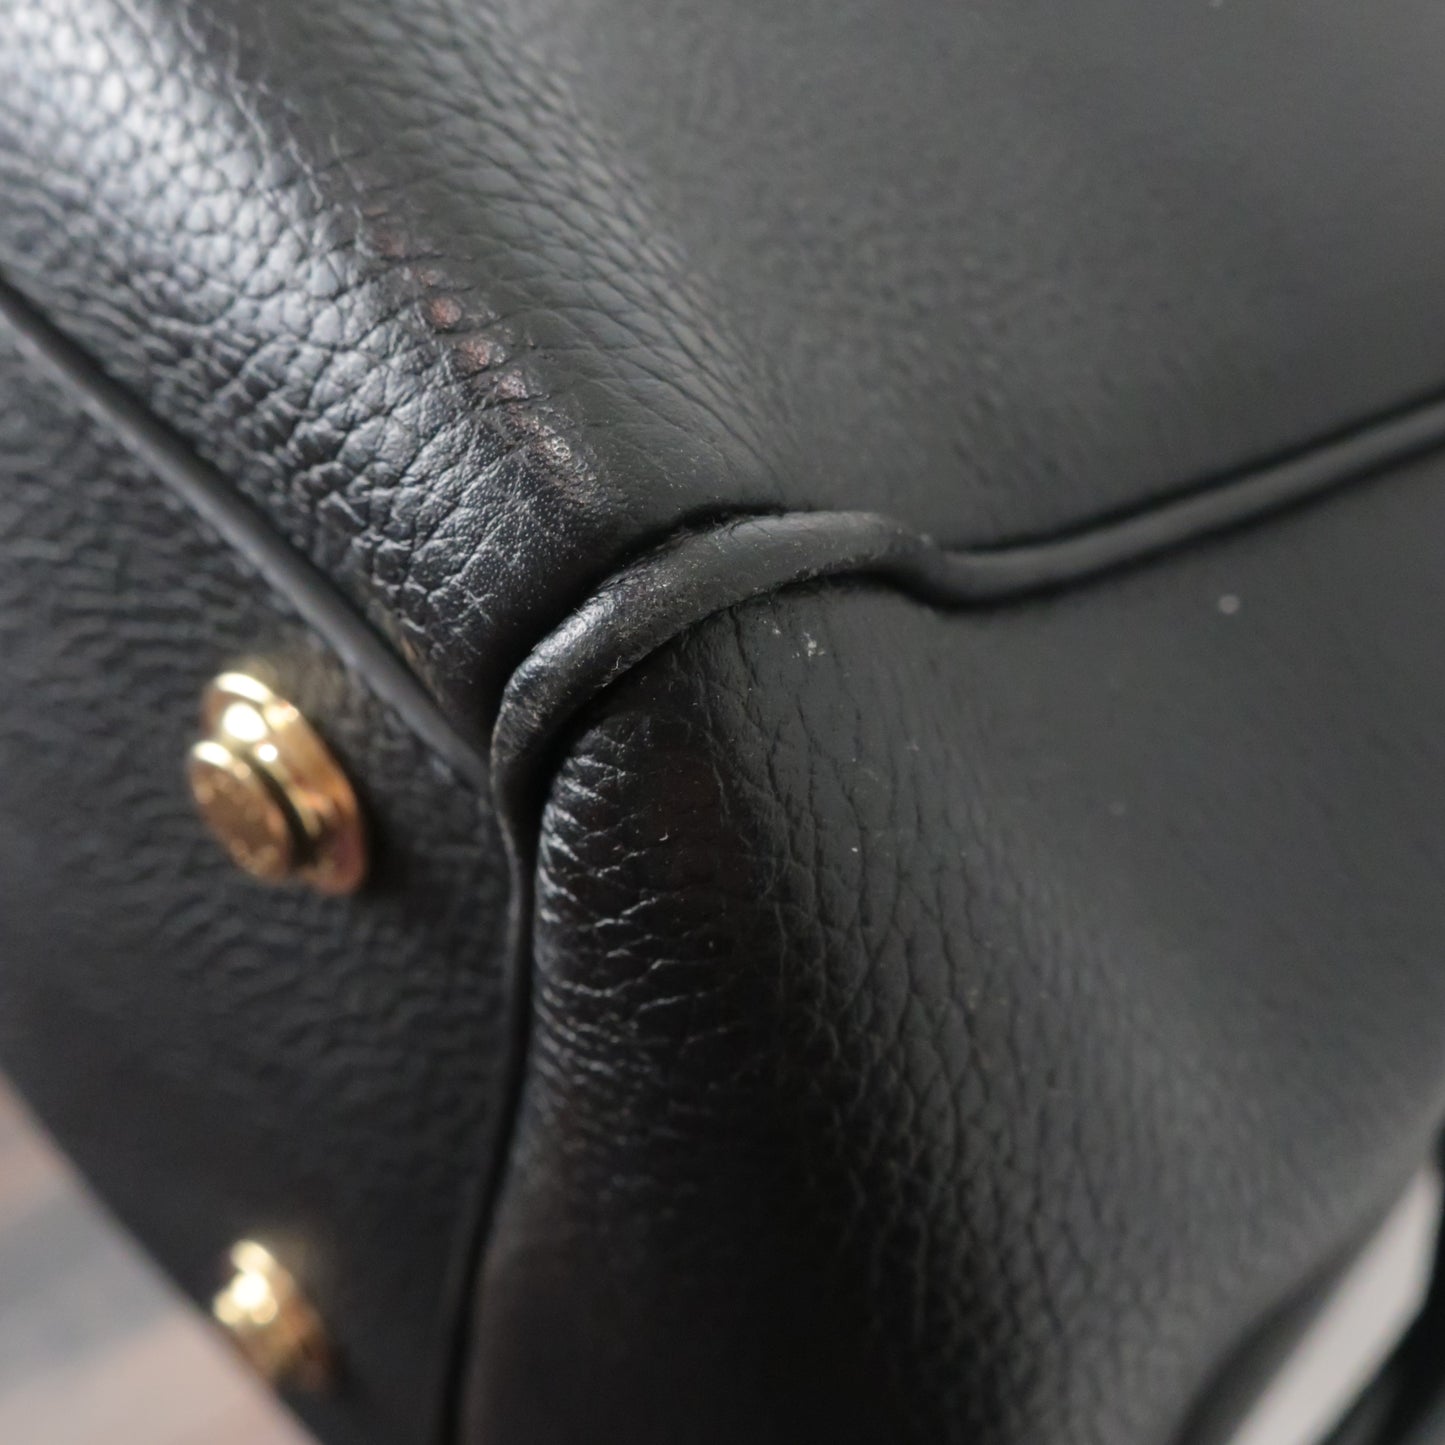 Louis Vuitton Black Taurillion Leather Milla MM Bag